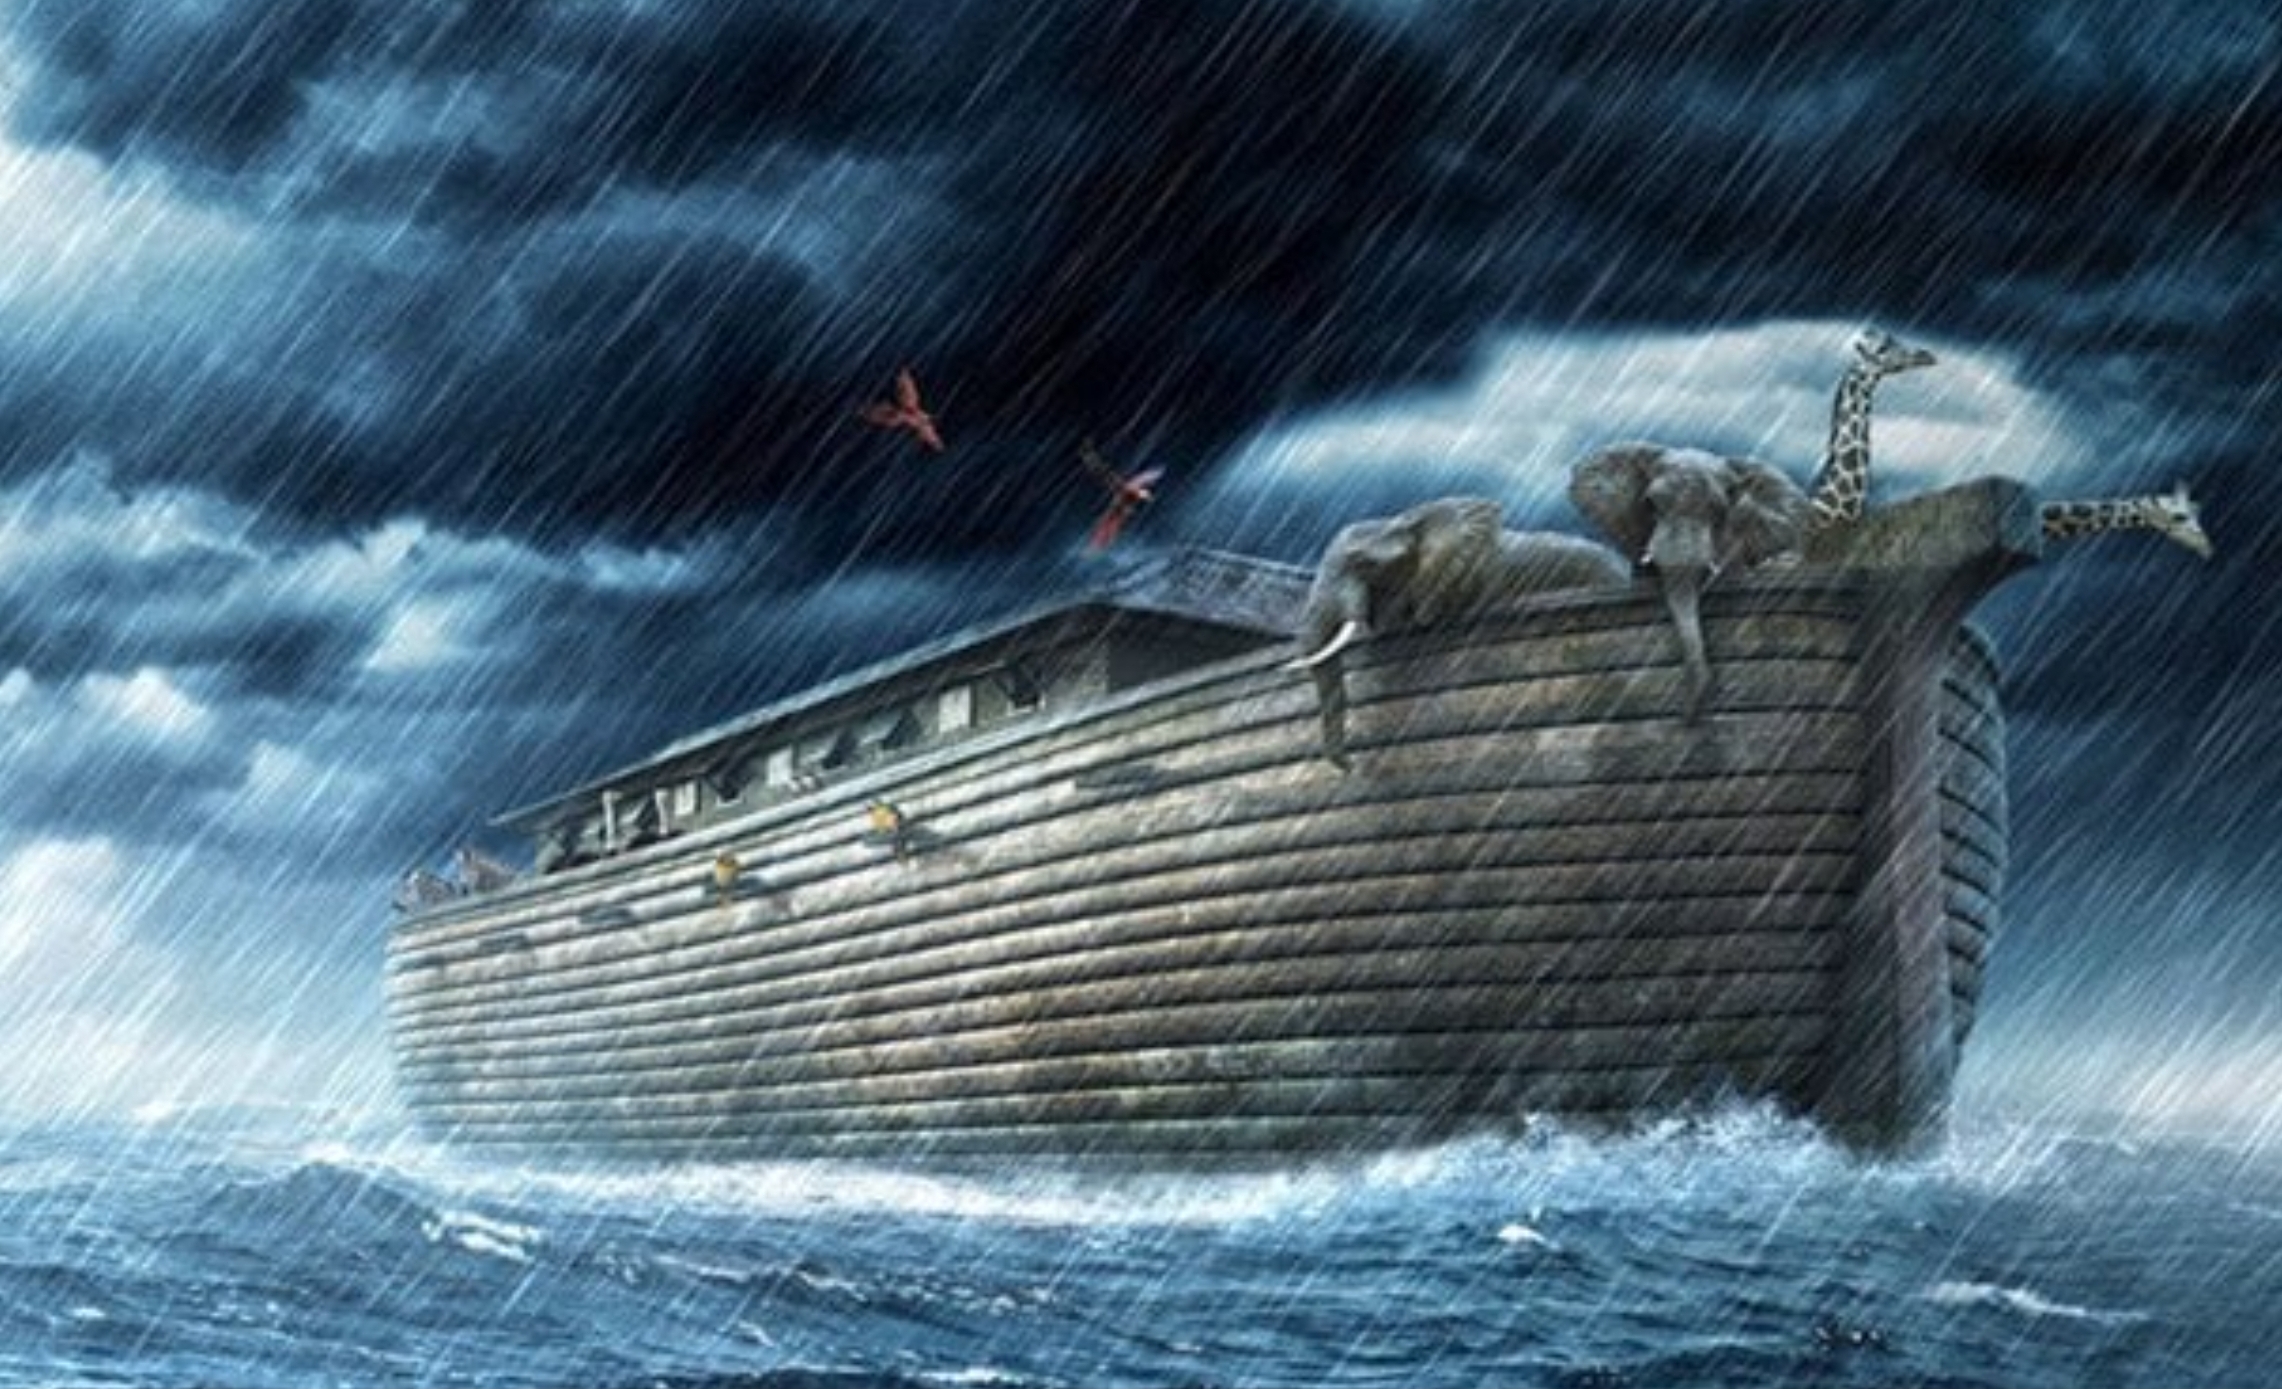 Perbandingan Ukuran Bahtera Nabi Nuh dan Kapal Besar yang Dibangun Mahad Al Zaytun, Ternyata...